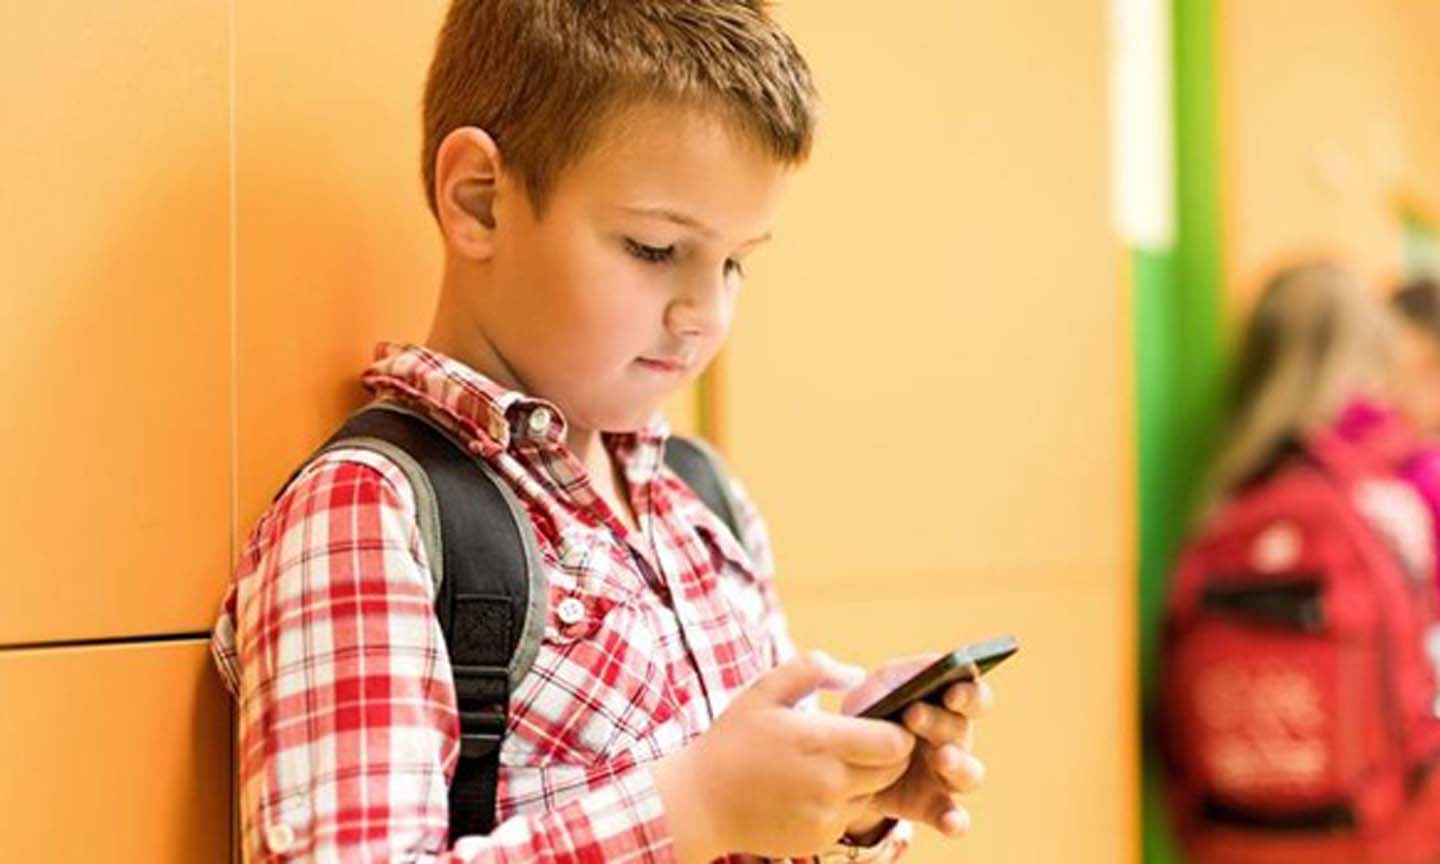 Đại học New South Wales công bố một nghiên cứu về tác hại của các thiết bị thông minh với trẻ. (Nguồn: techadvisor.co.uk)